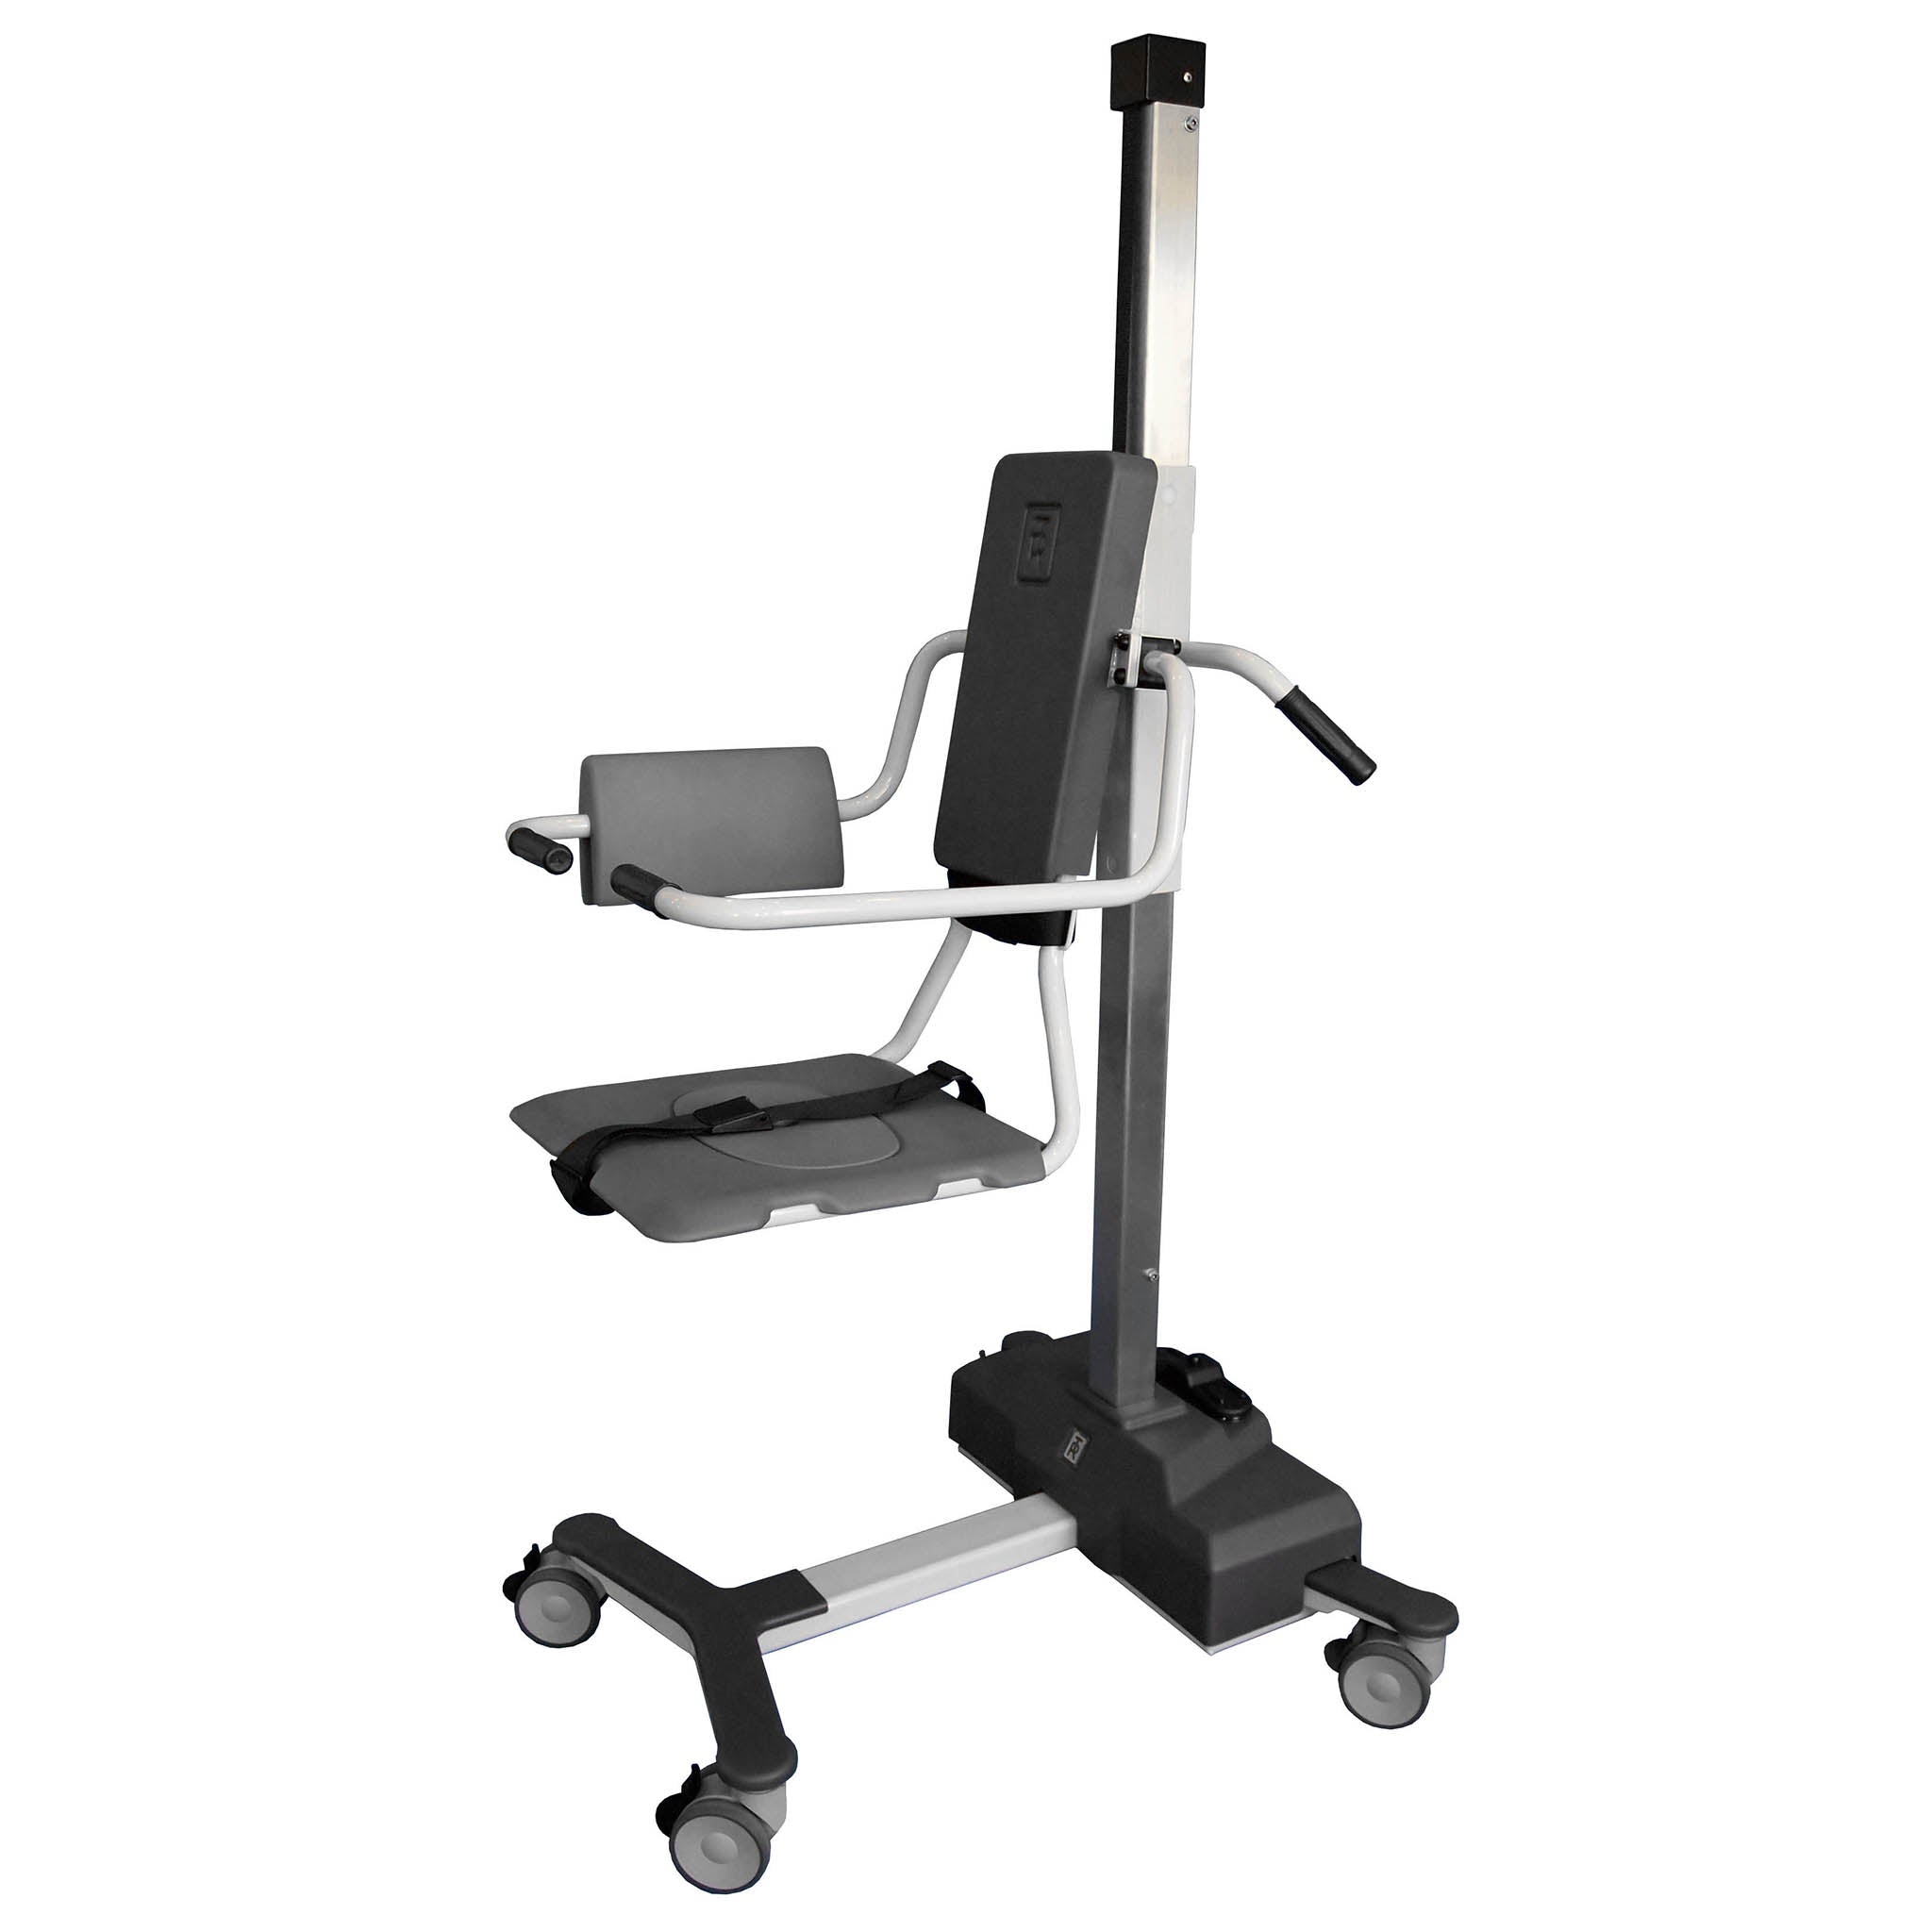 TR Equipment TR9650 Mobile Patient Bath Chair Lift